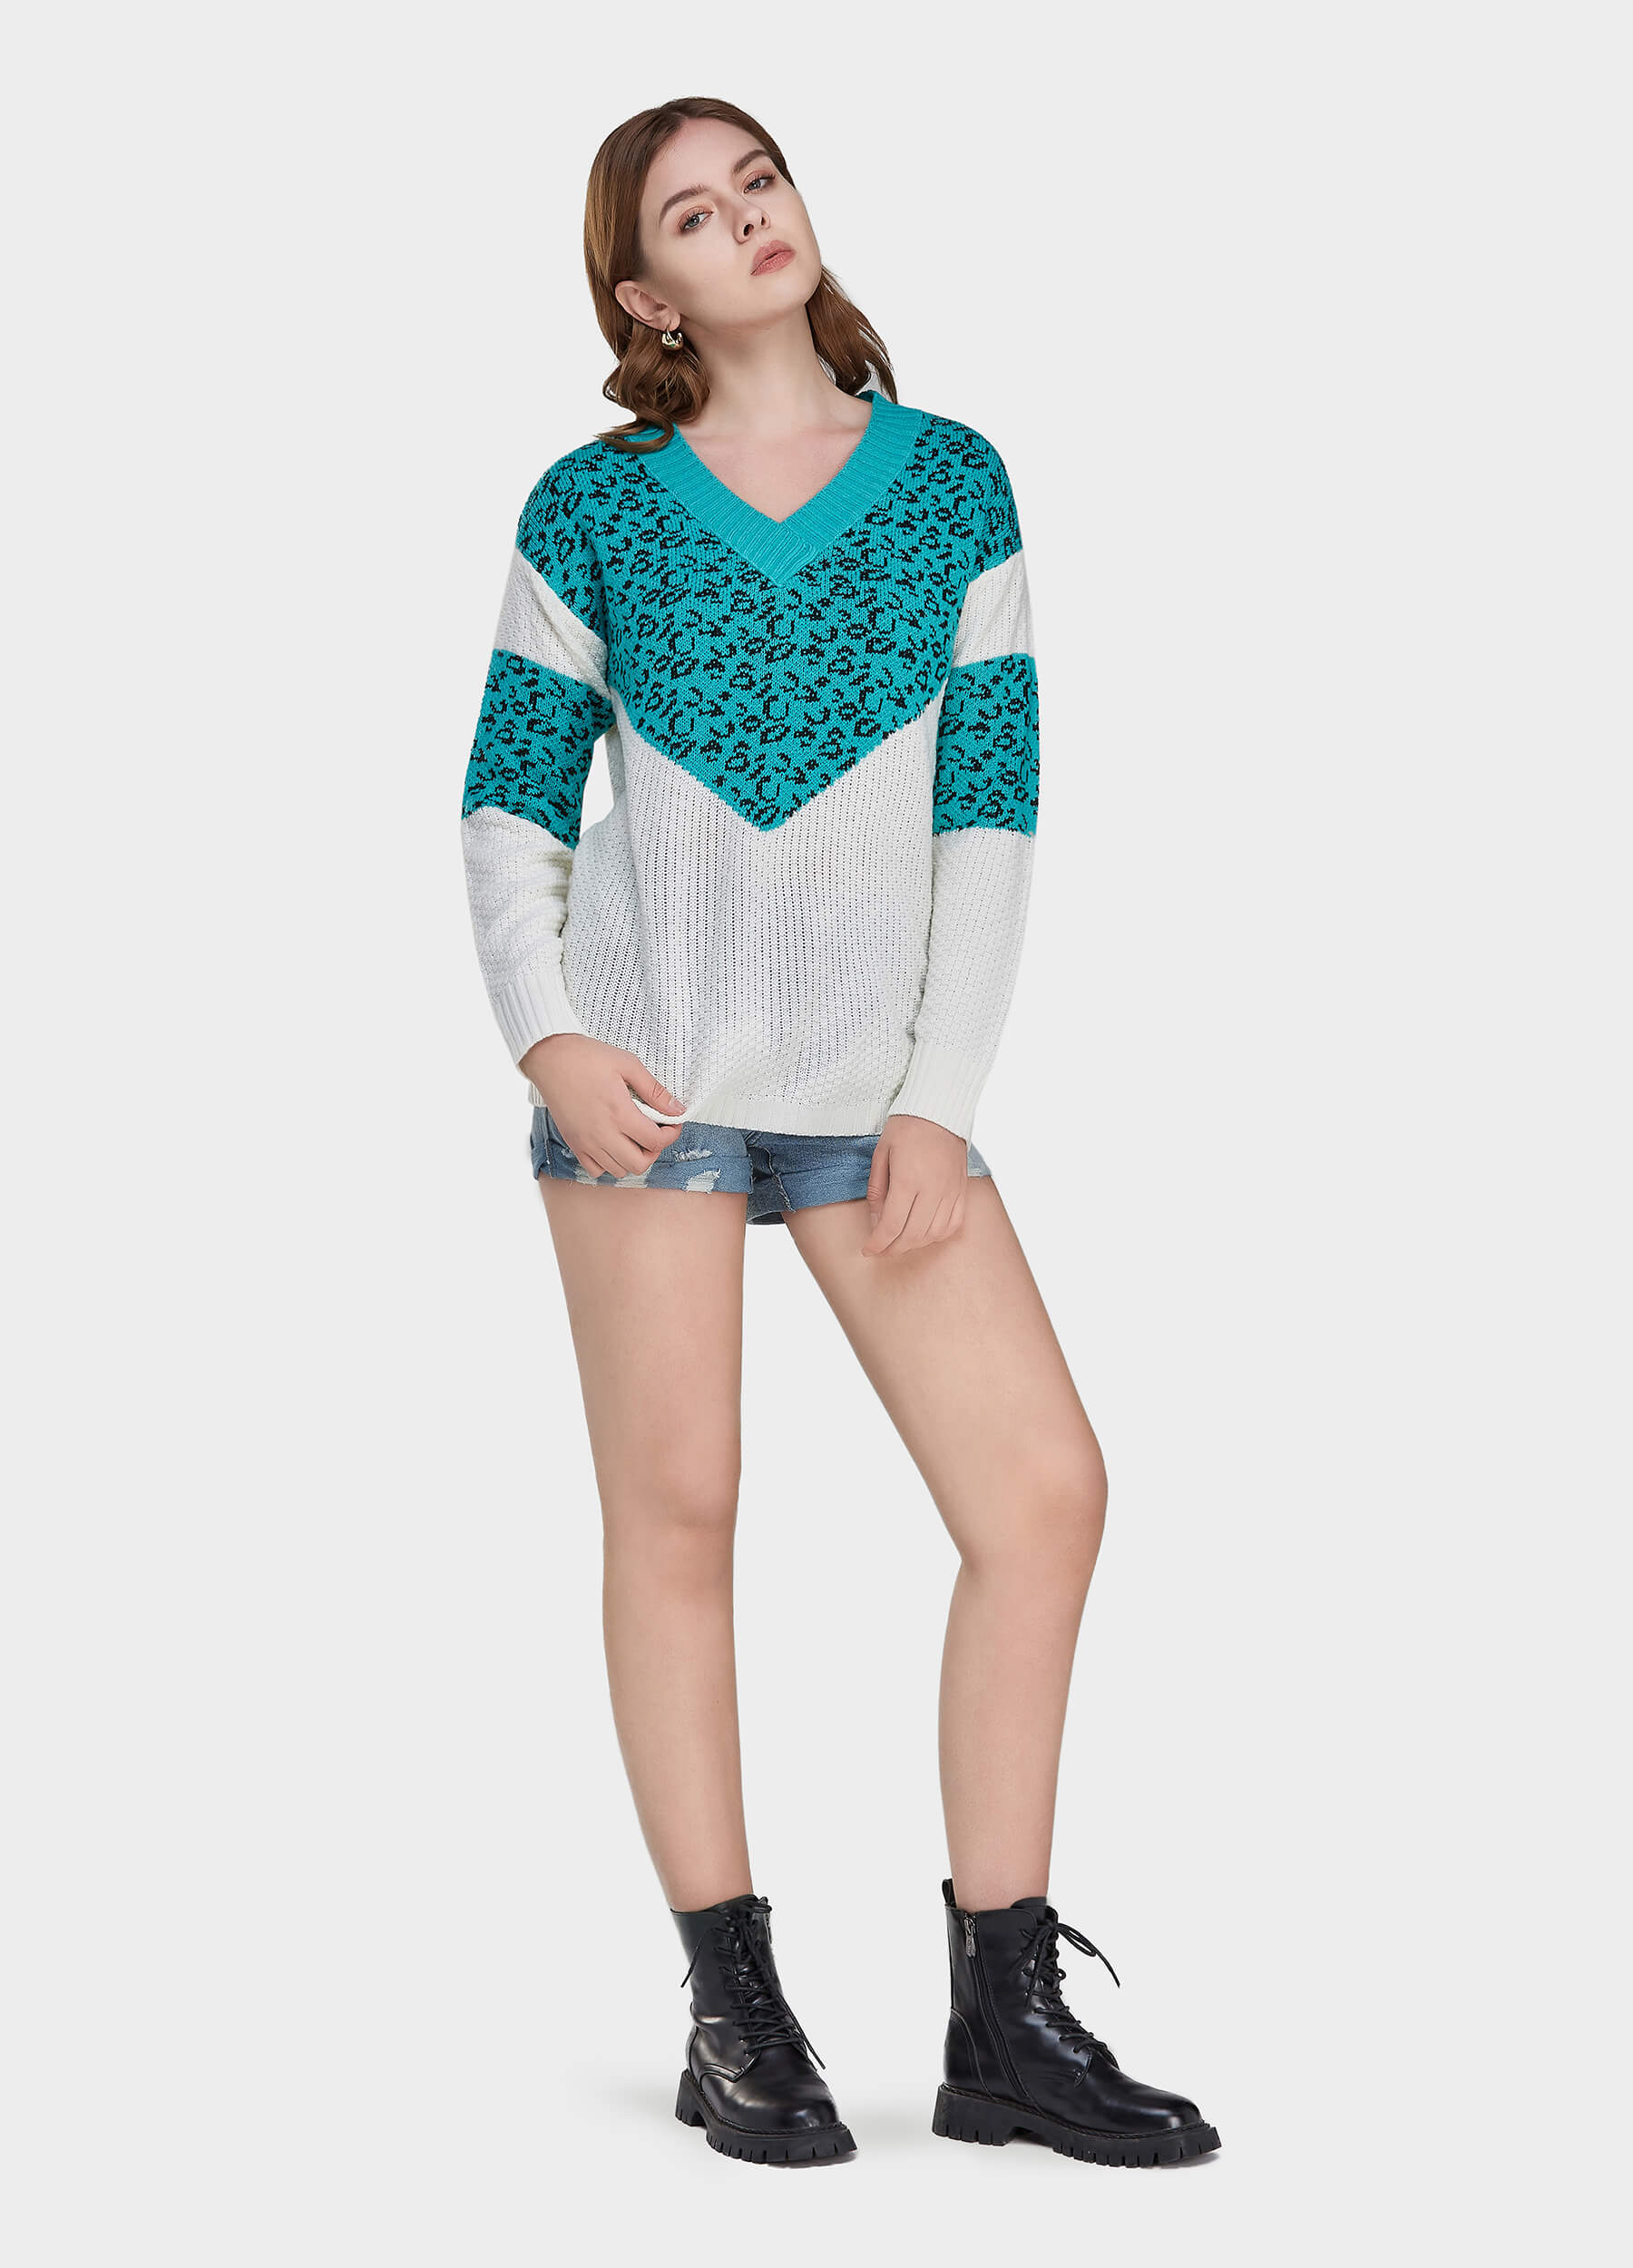 MECALA Women's V-Neck Leopard Print Long Sleeve Sweater-Light Blue main view